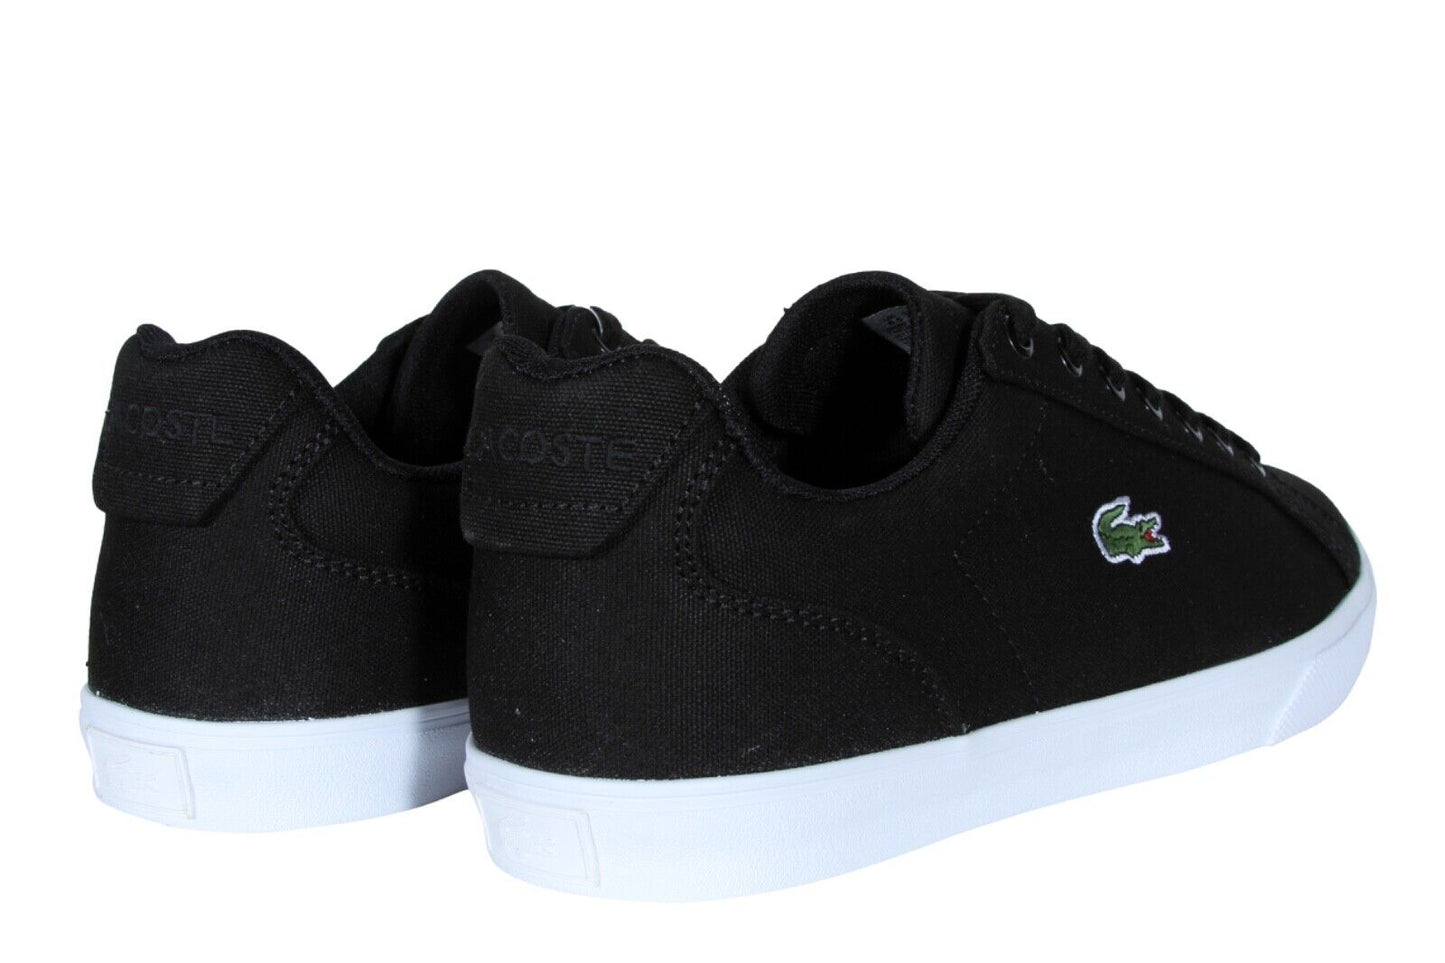 Lacoste Lerond Pro BL 123 1 CMA Men’s Sneakers in Black and White 745CMA0054312